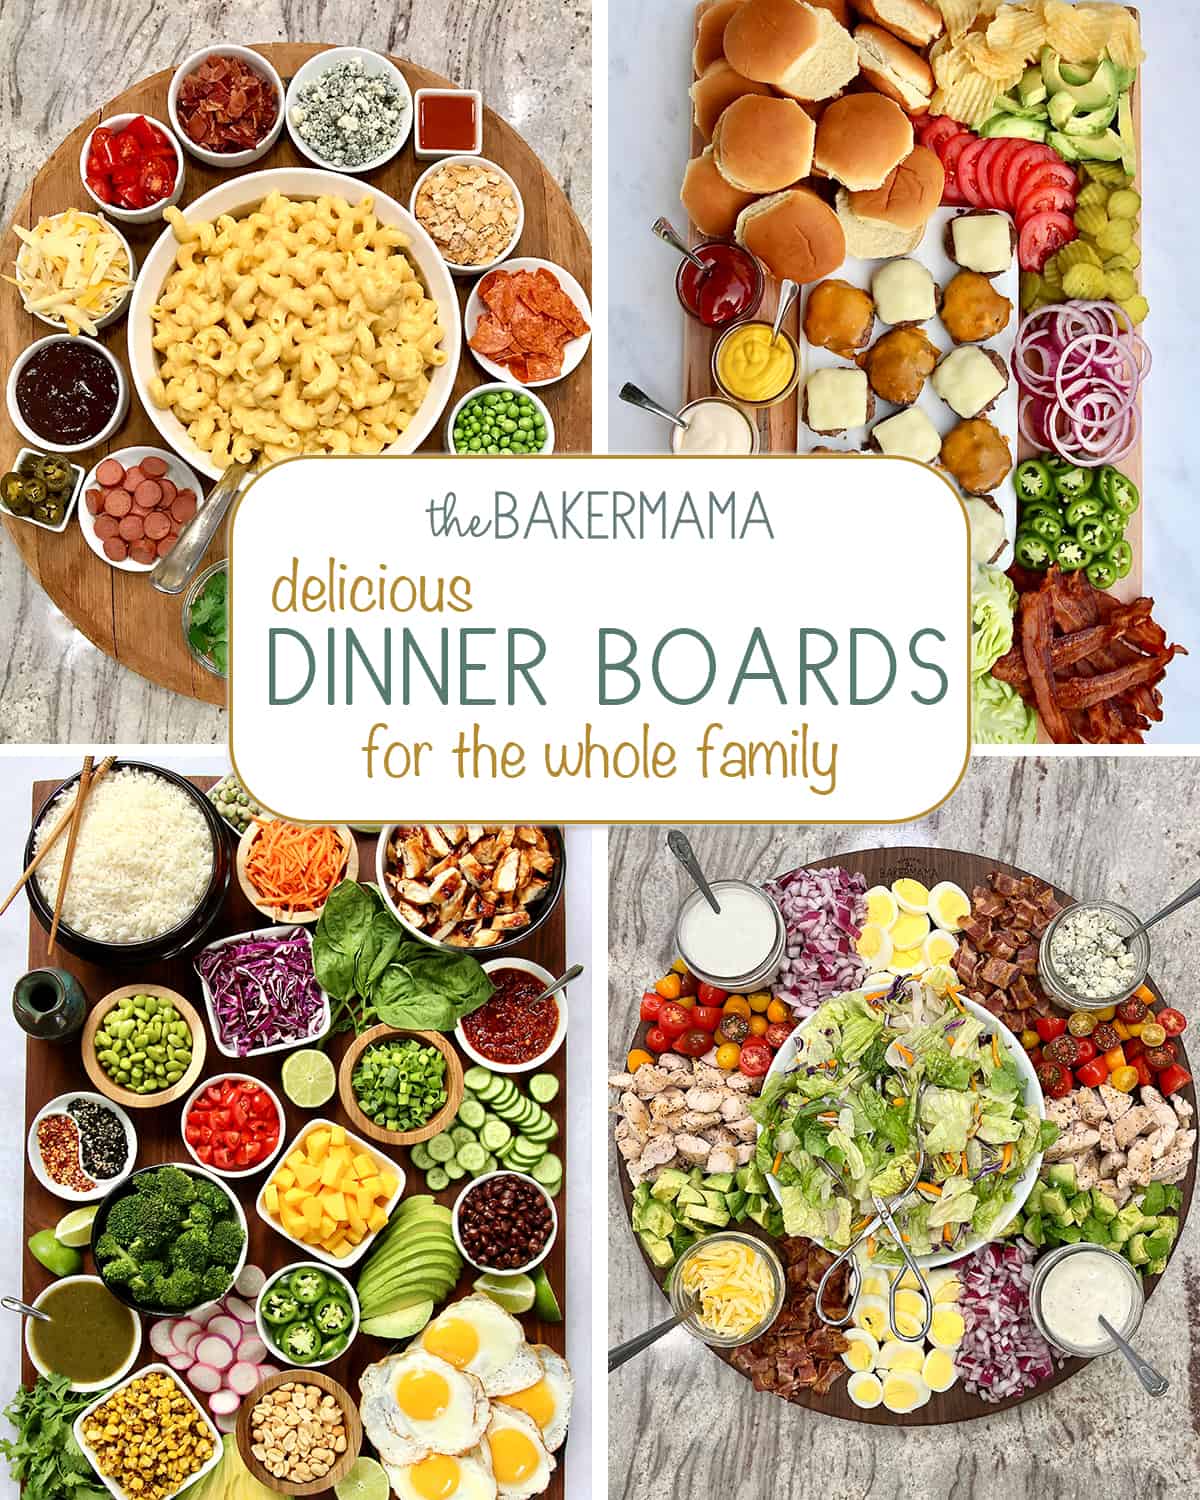 Mac and Cheese Board, Burger Board, Rice Bowl Board and Cobb Salad Board